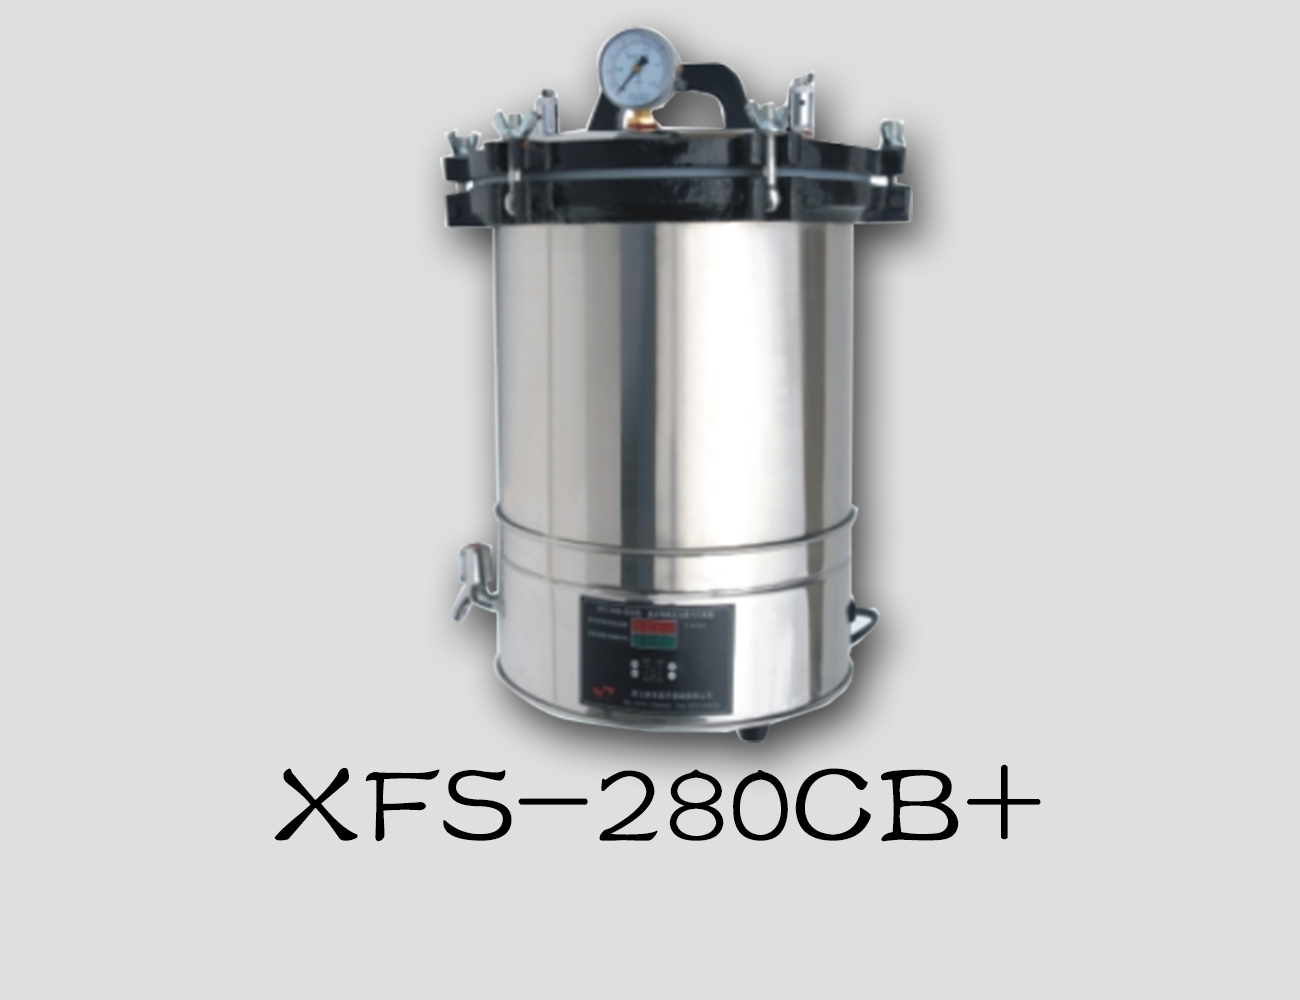 浙江新丰手提式灭菌器XFS-280CB+